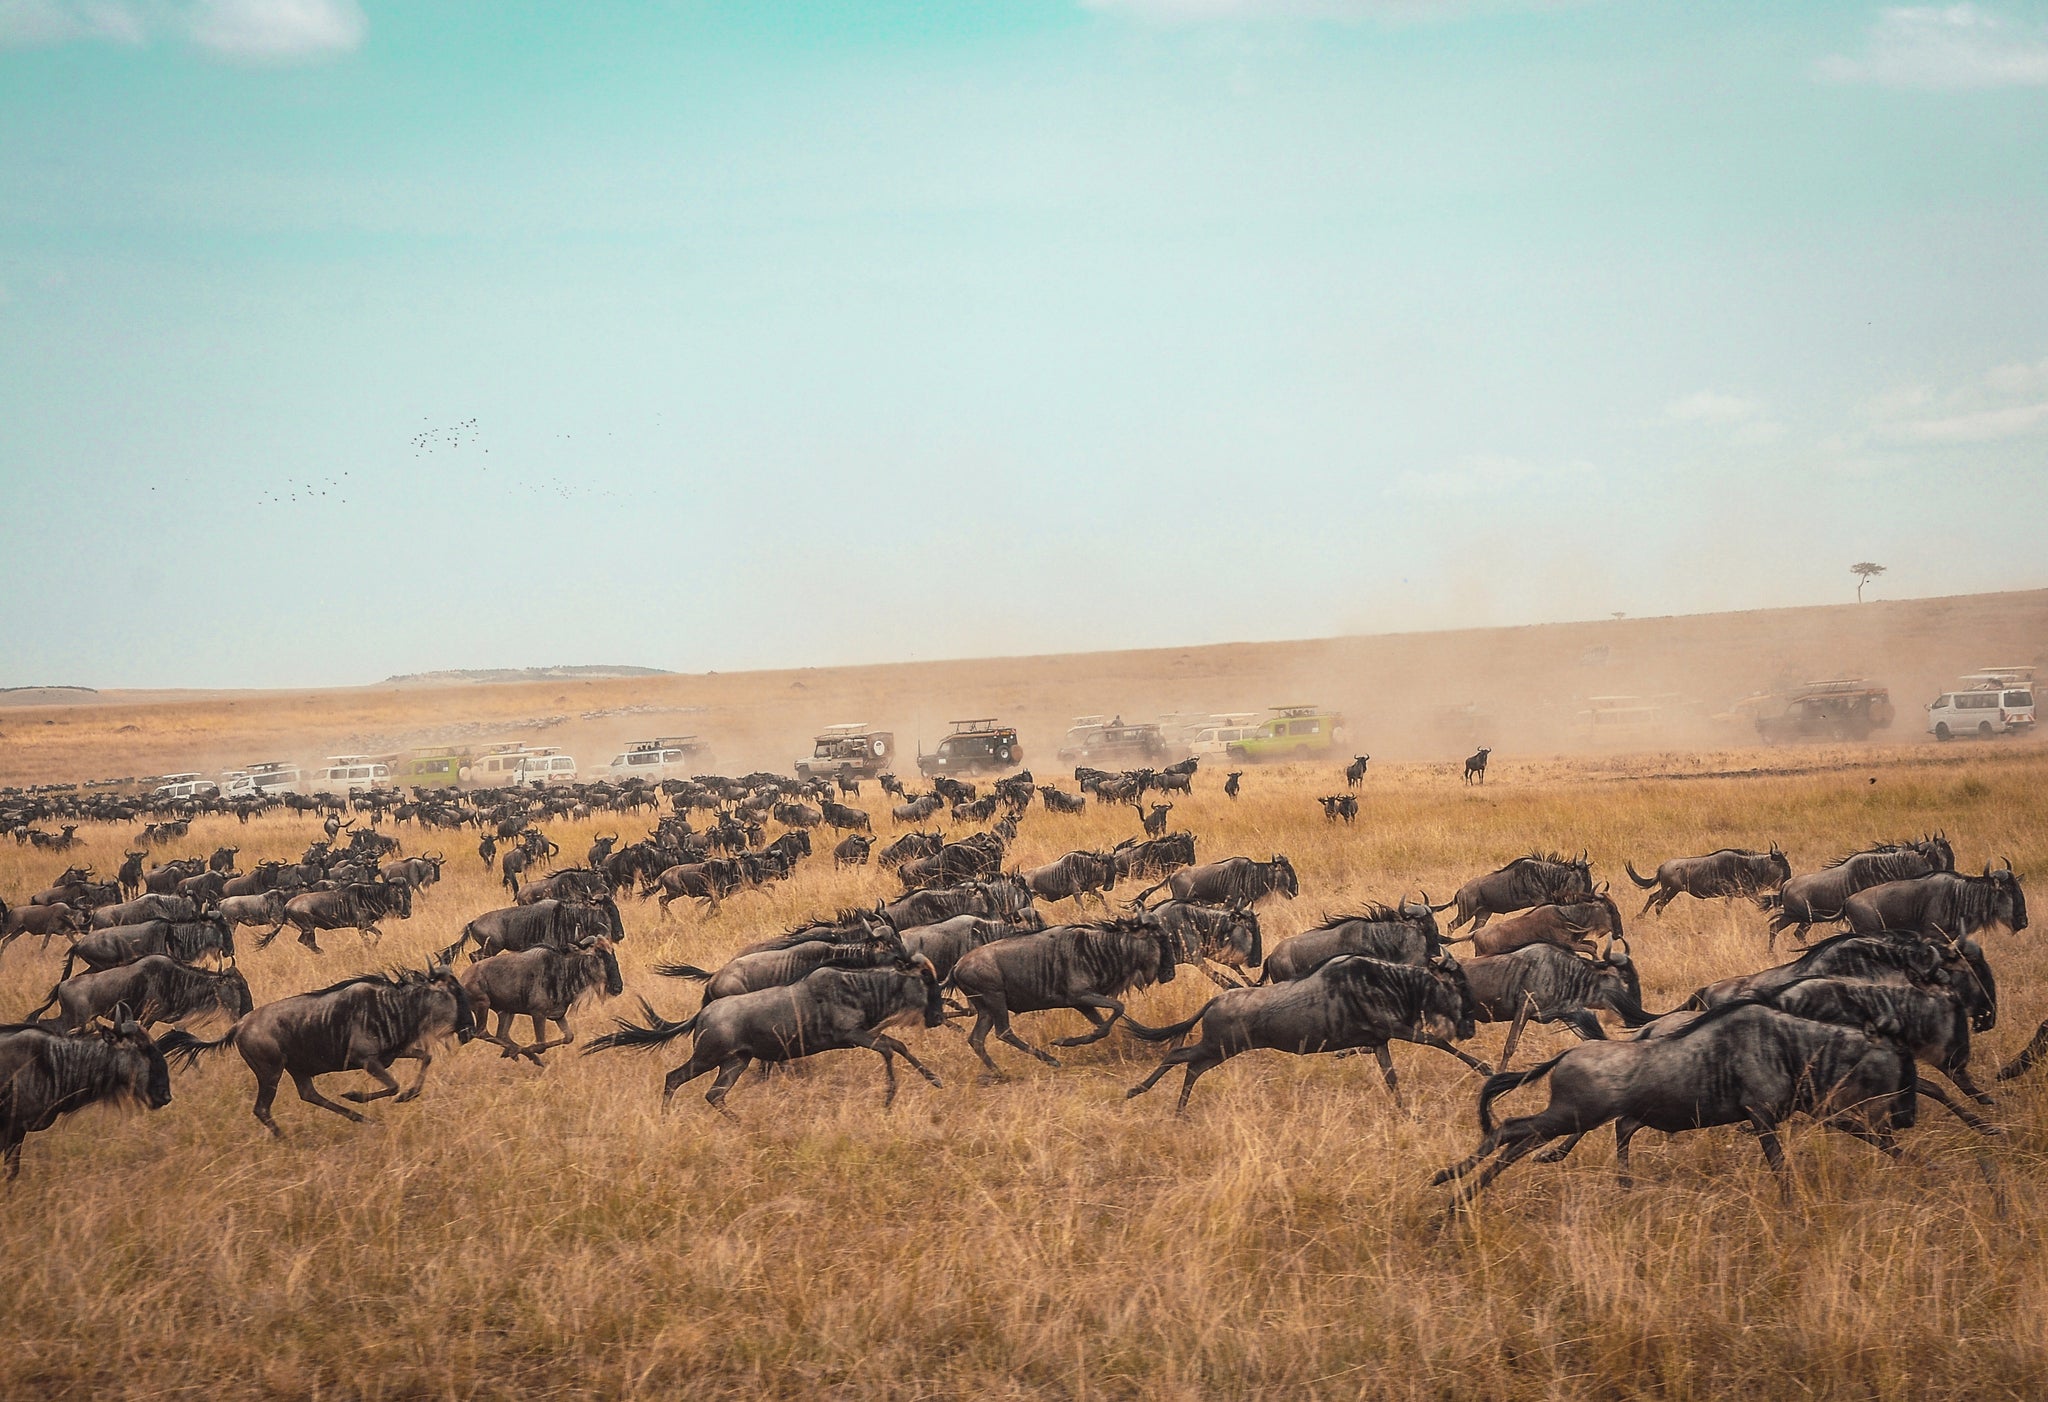 Serengeti, Wildebeest migration, Africa, Travel 